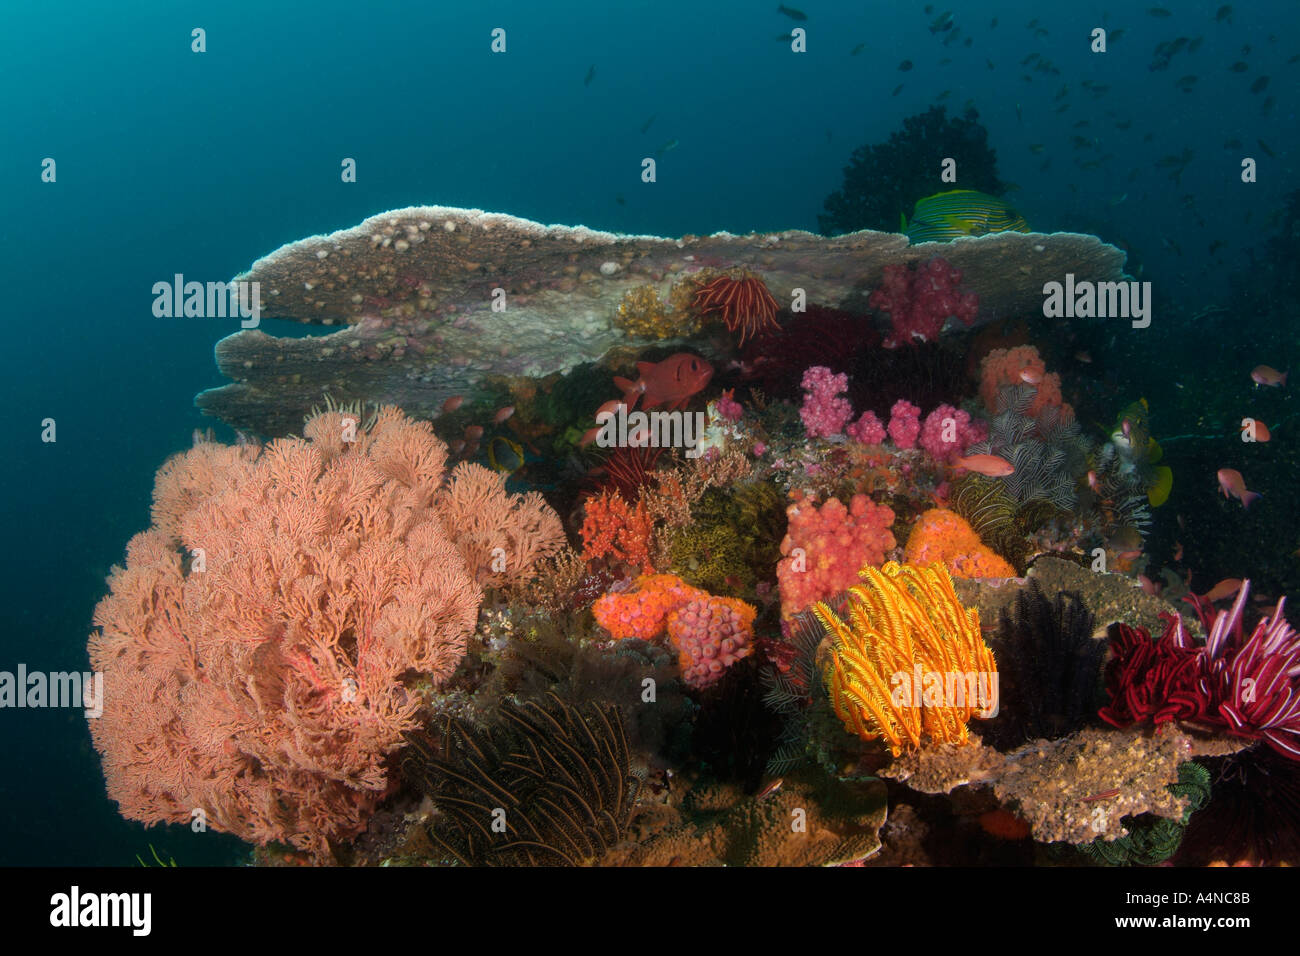 nm0322 D Korallenriff mit Korallen SEELILIEN und GORGONIEN Indonesien Indo Pazifik Copyright Brandon Cole Stockfoto